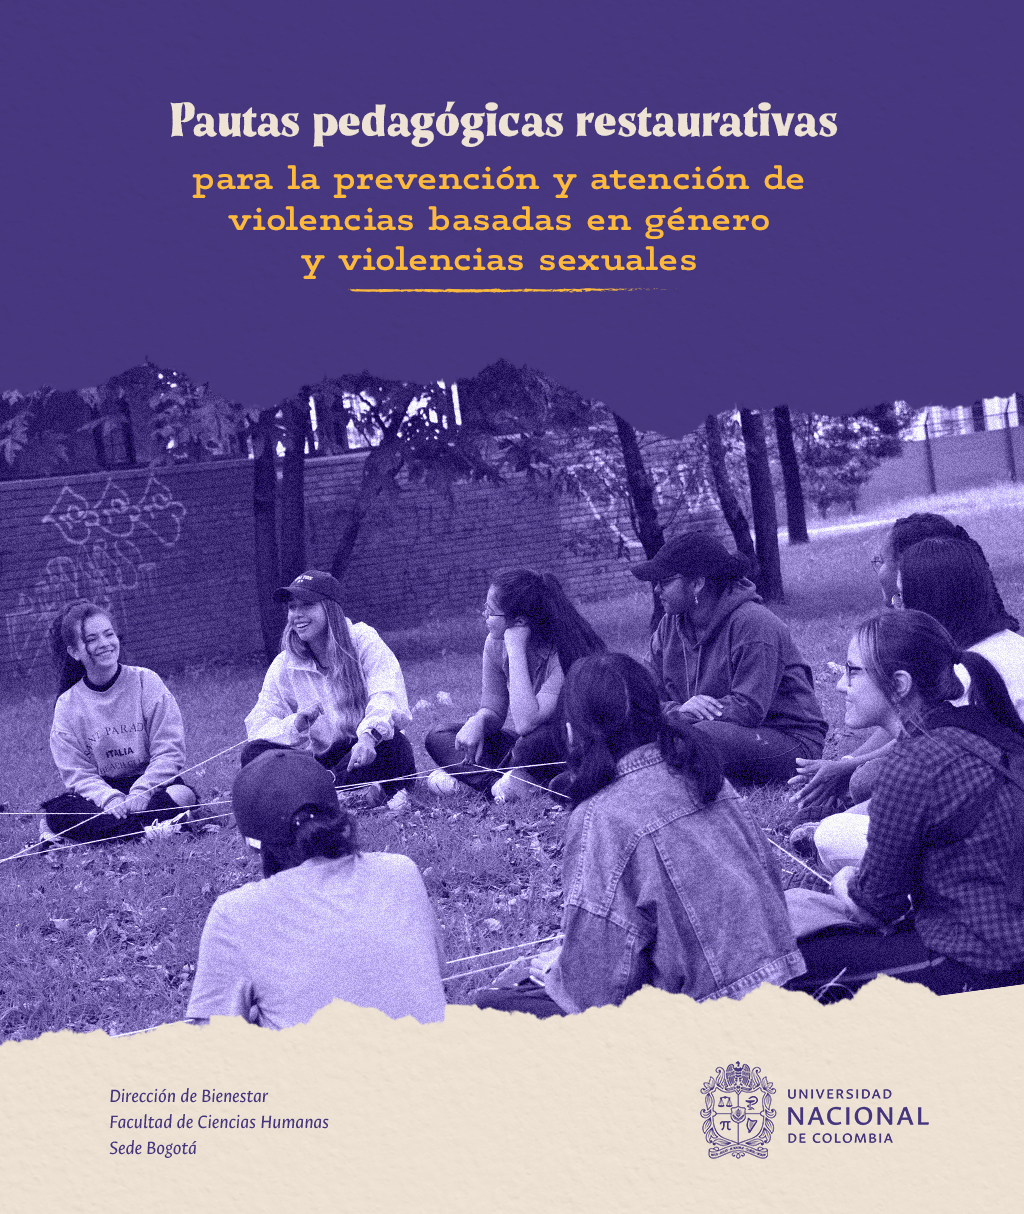 Pautas pedagógicas restaurativas para la prevención y atención de violencias basadas en género y violencias sexuales